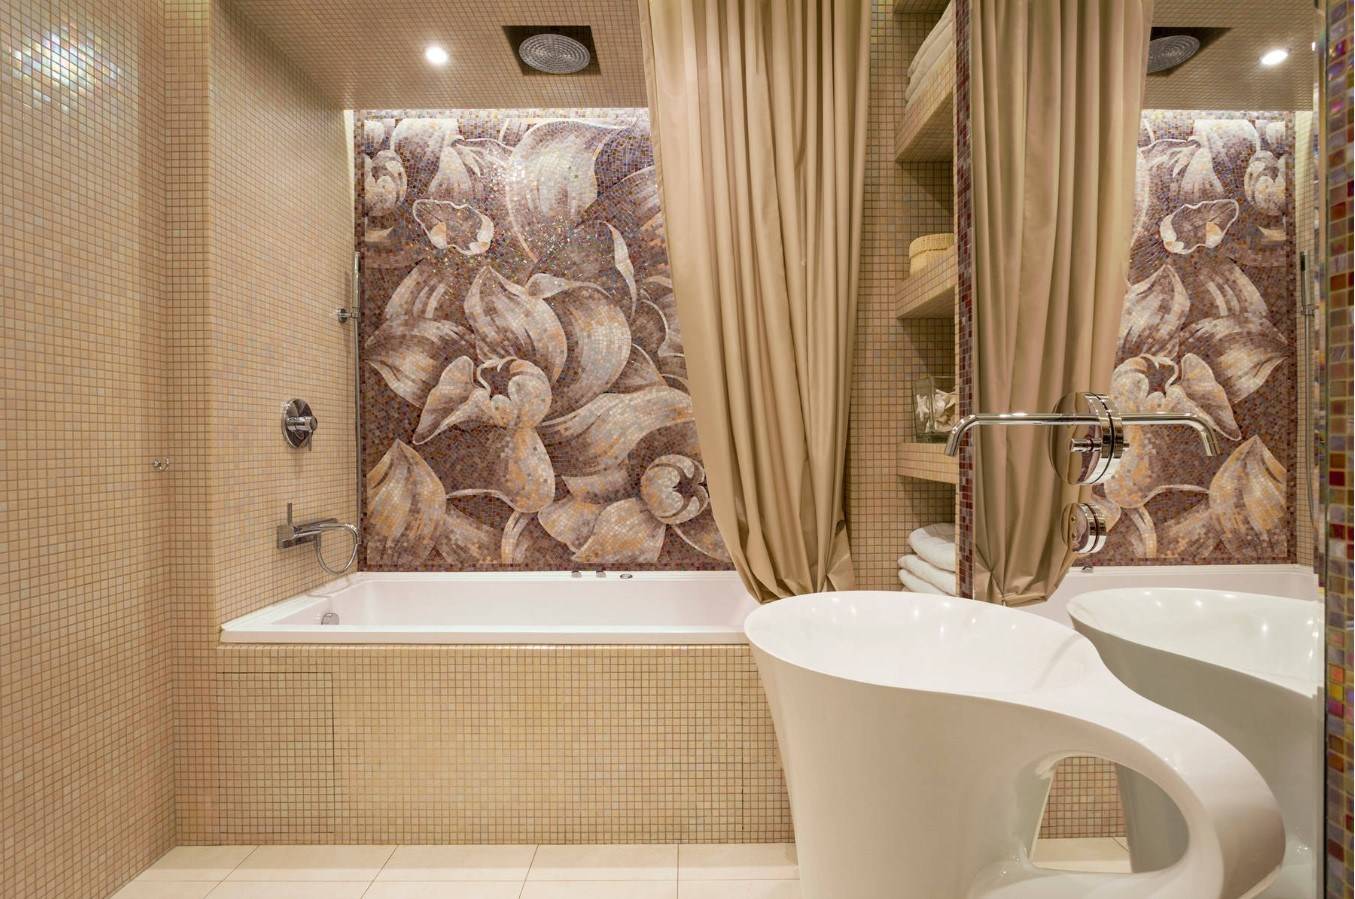 Плитка-мозаика для ванной (125 фото): дизайн комнаты с мозаичной плиткой на полу, самоклеящаяся плитка в интерьере, керамическая и пластиковая, стеклянная плитка и другие варианты